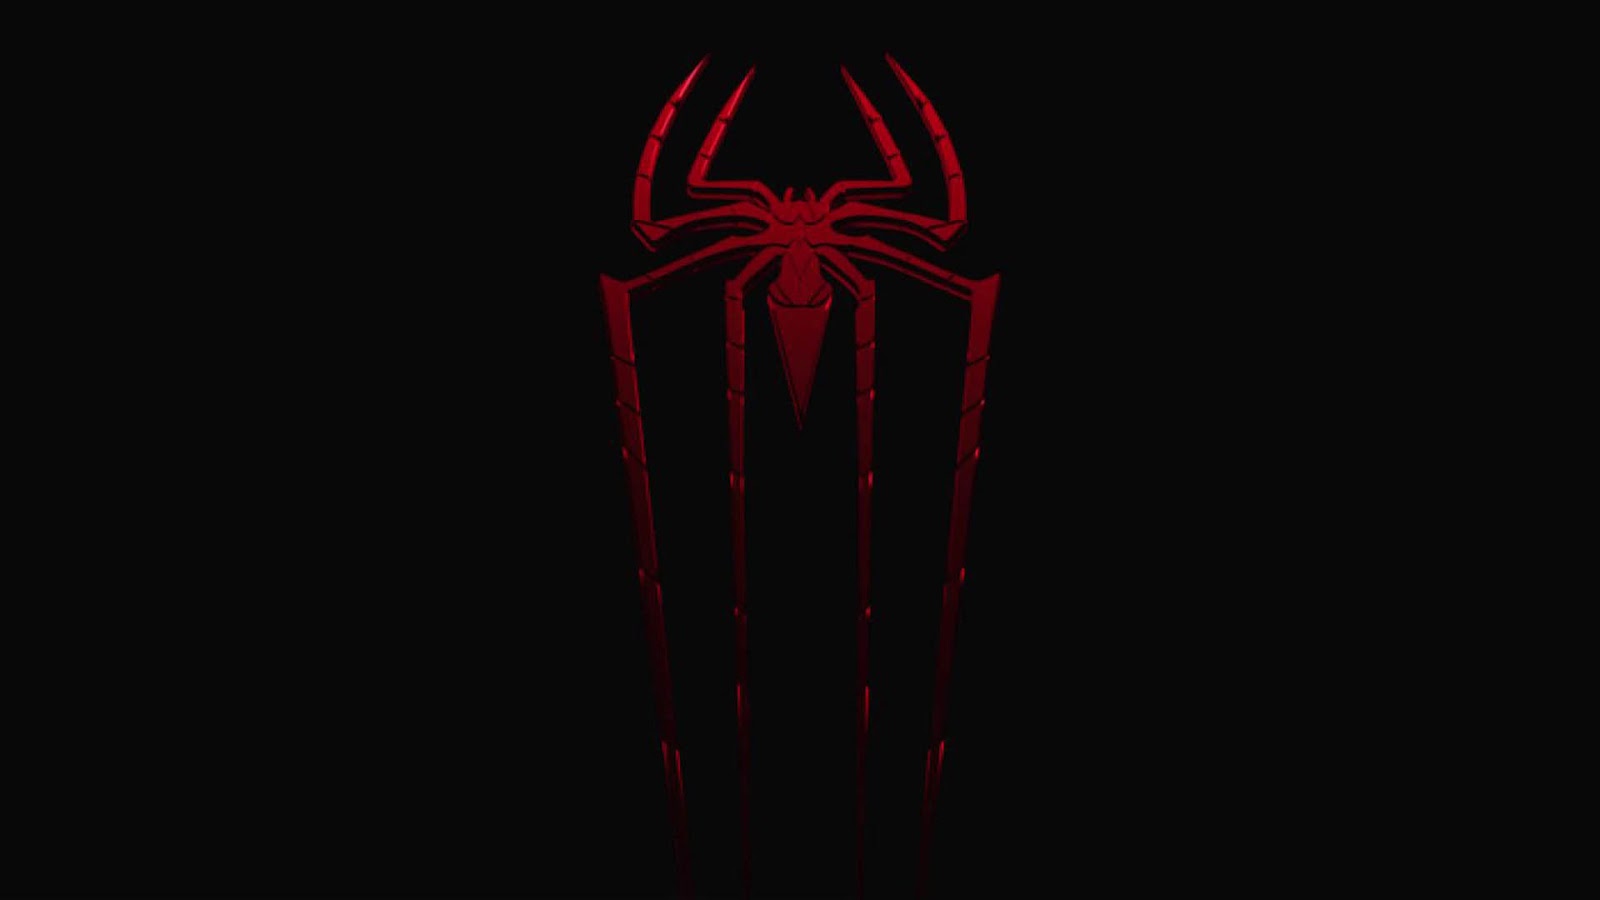 46+] Spiderman Wallpaper 1080p - WallpaperSafari